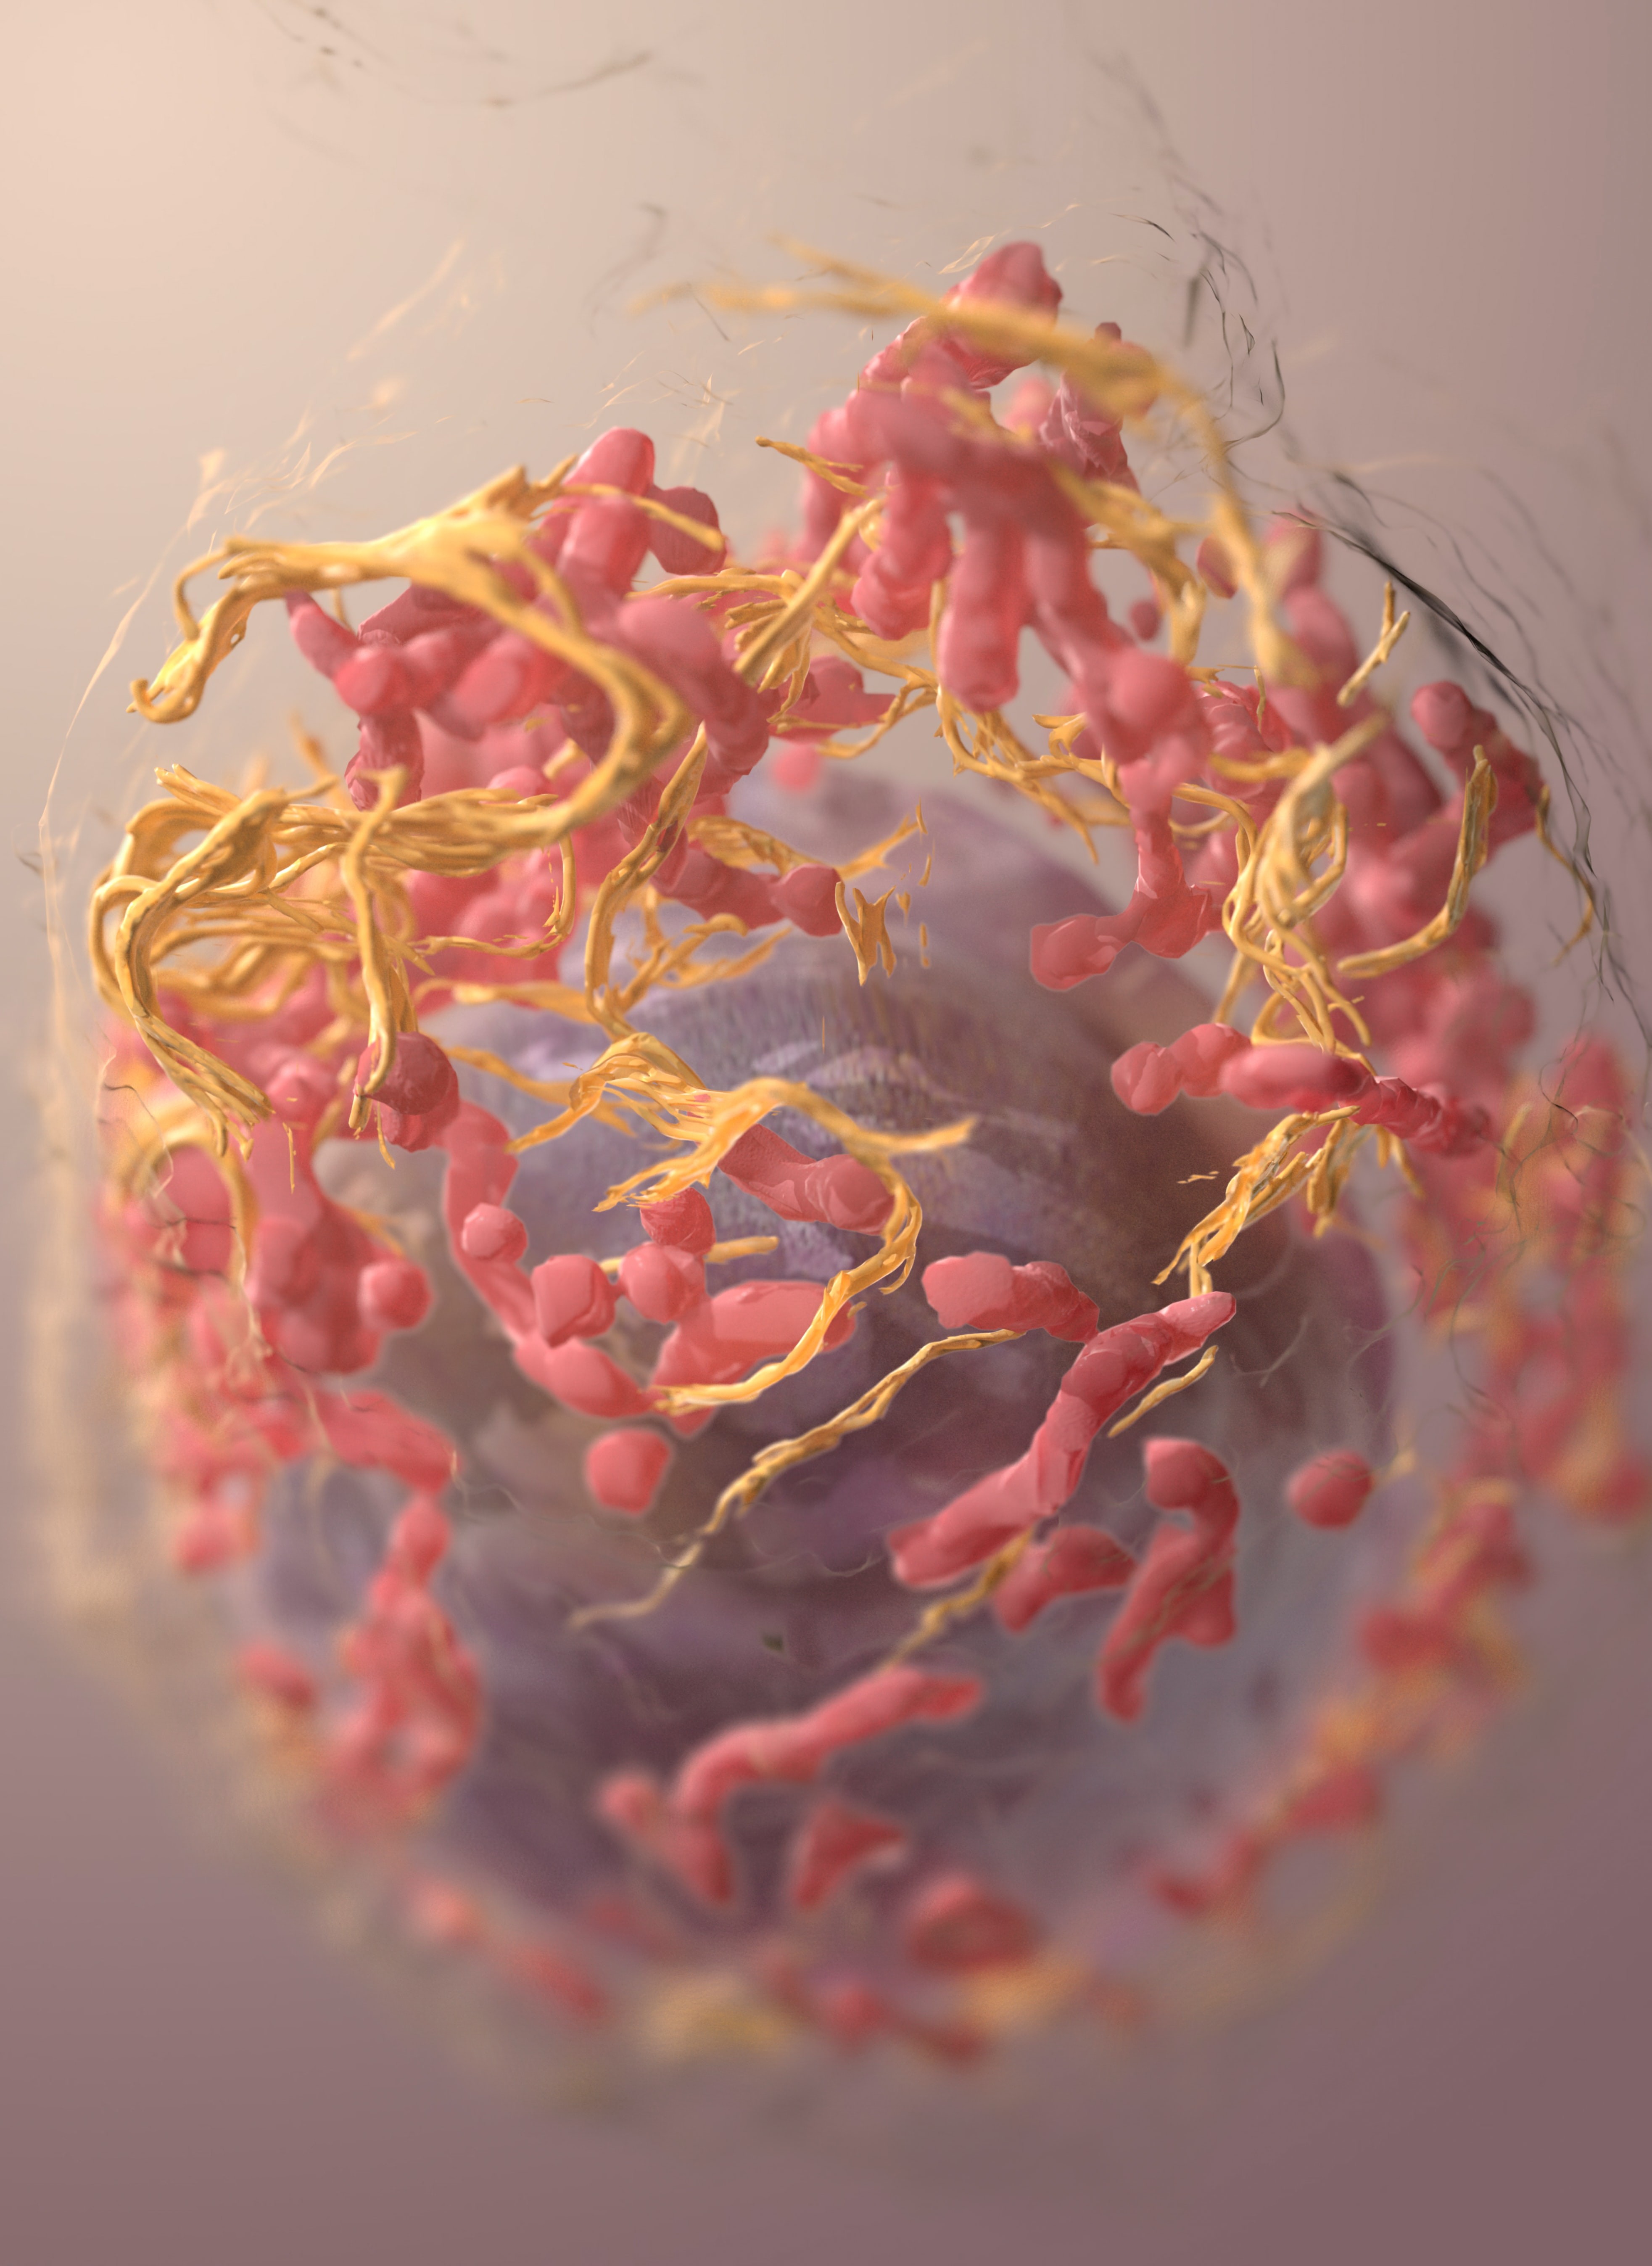 Entrevista: A maioria dos cânceres pode ser prevenida. Acima: estrutura 3D de uma célula de melanoma. (Foto: National Cancer Institute/Unsplash)